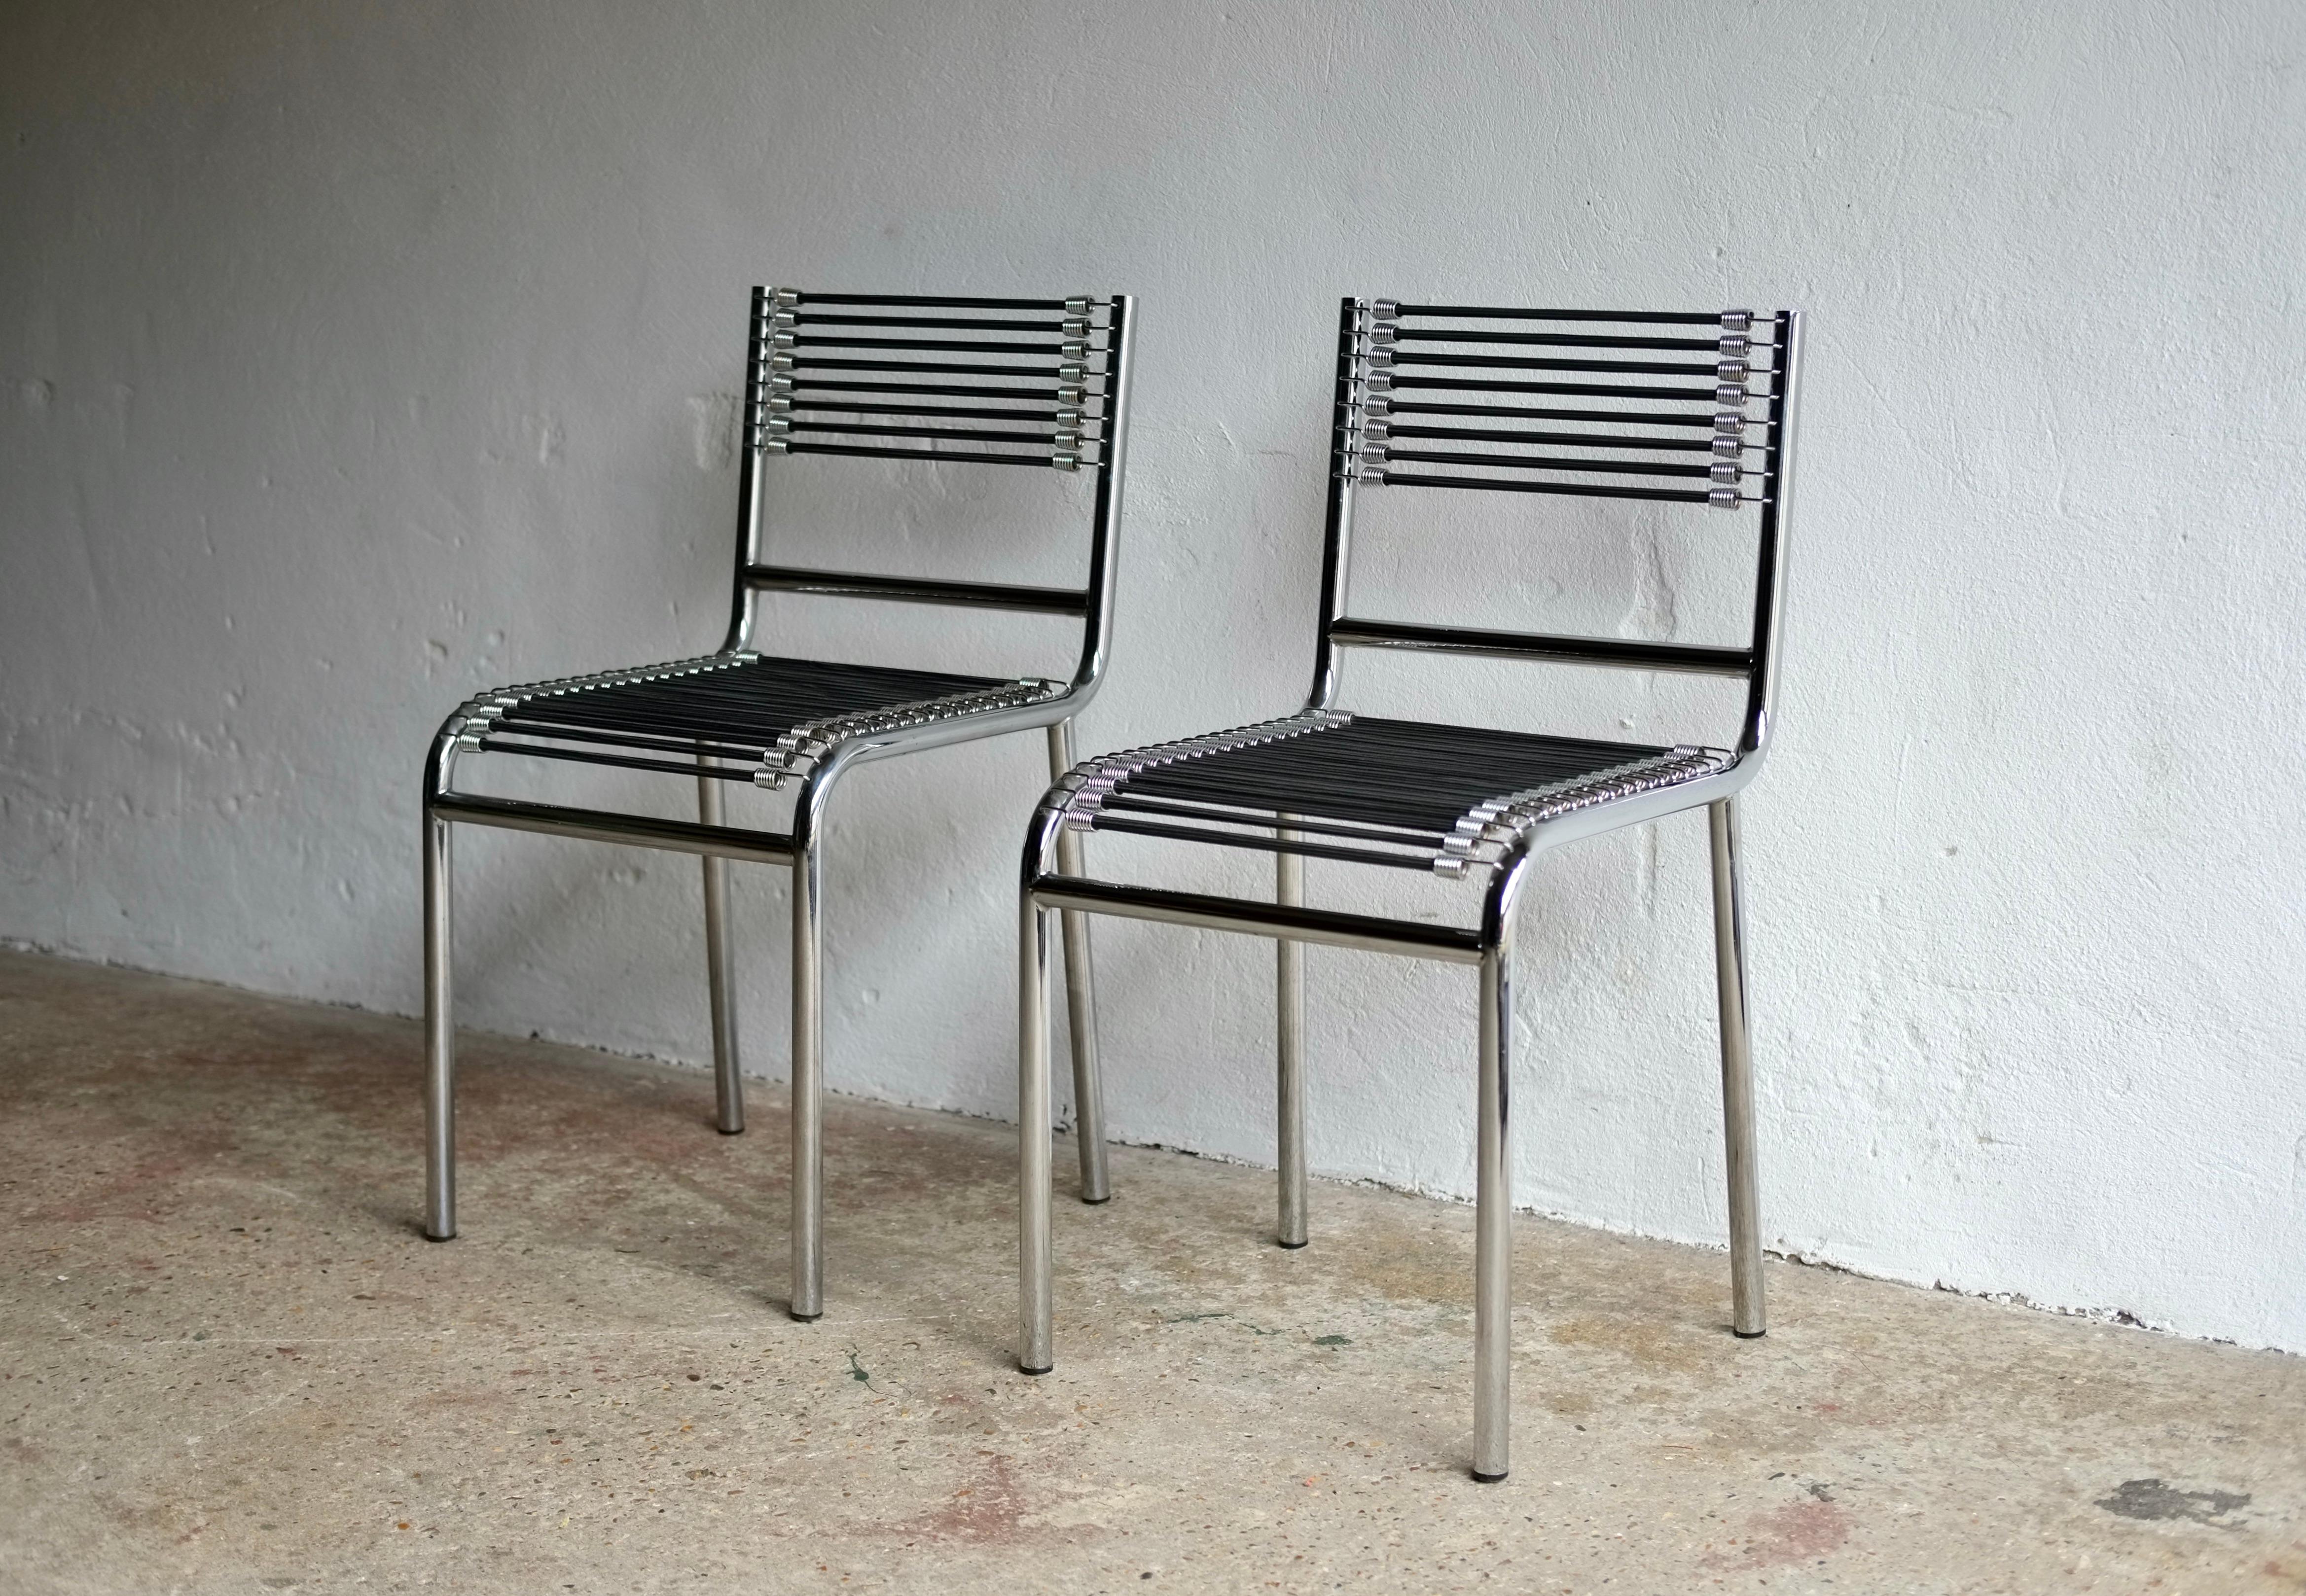 Ein Paar Esstischstühle des Modells 101 Sandows, entworfen vom französischen Architekten Rene Herbst im Jahr 1928 und in den 1990er Jahren reproduziert. 

Erstmals ausgestellt auf dem Pariser Salon d'Automne des Artistes Decorateurs im Jahr